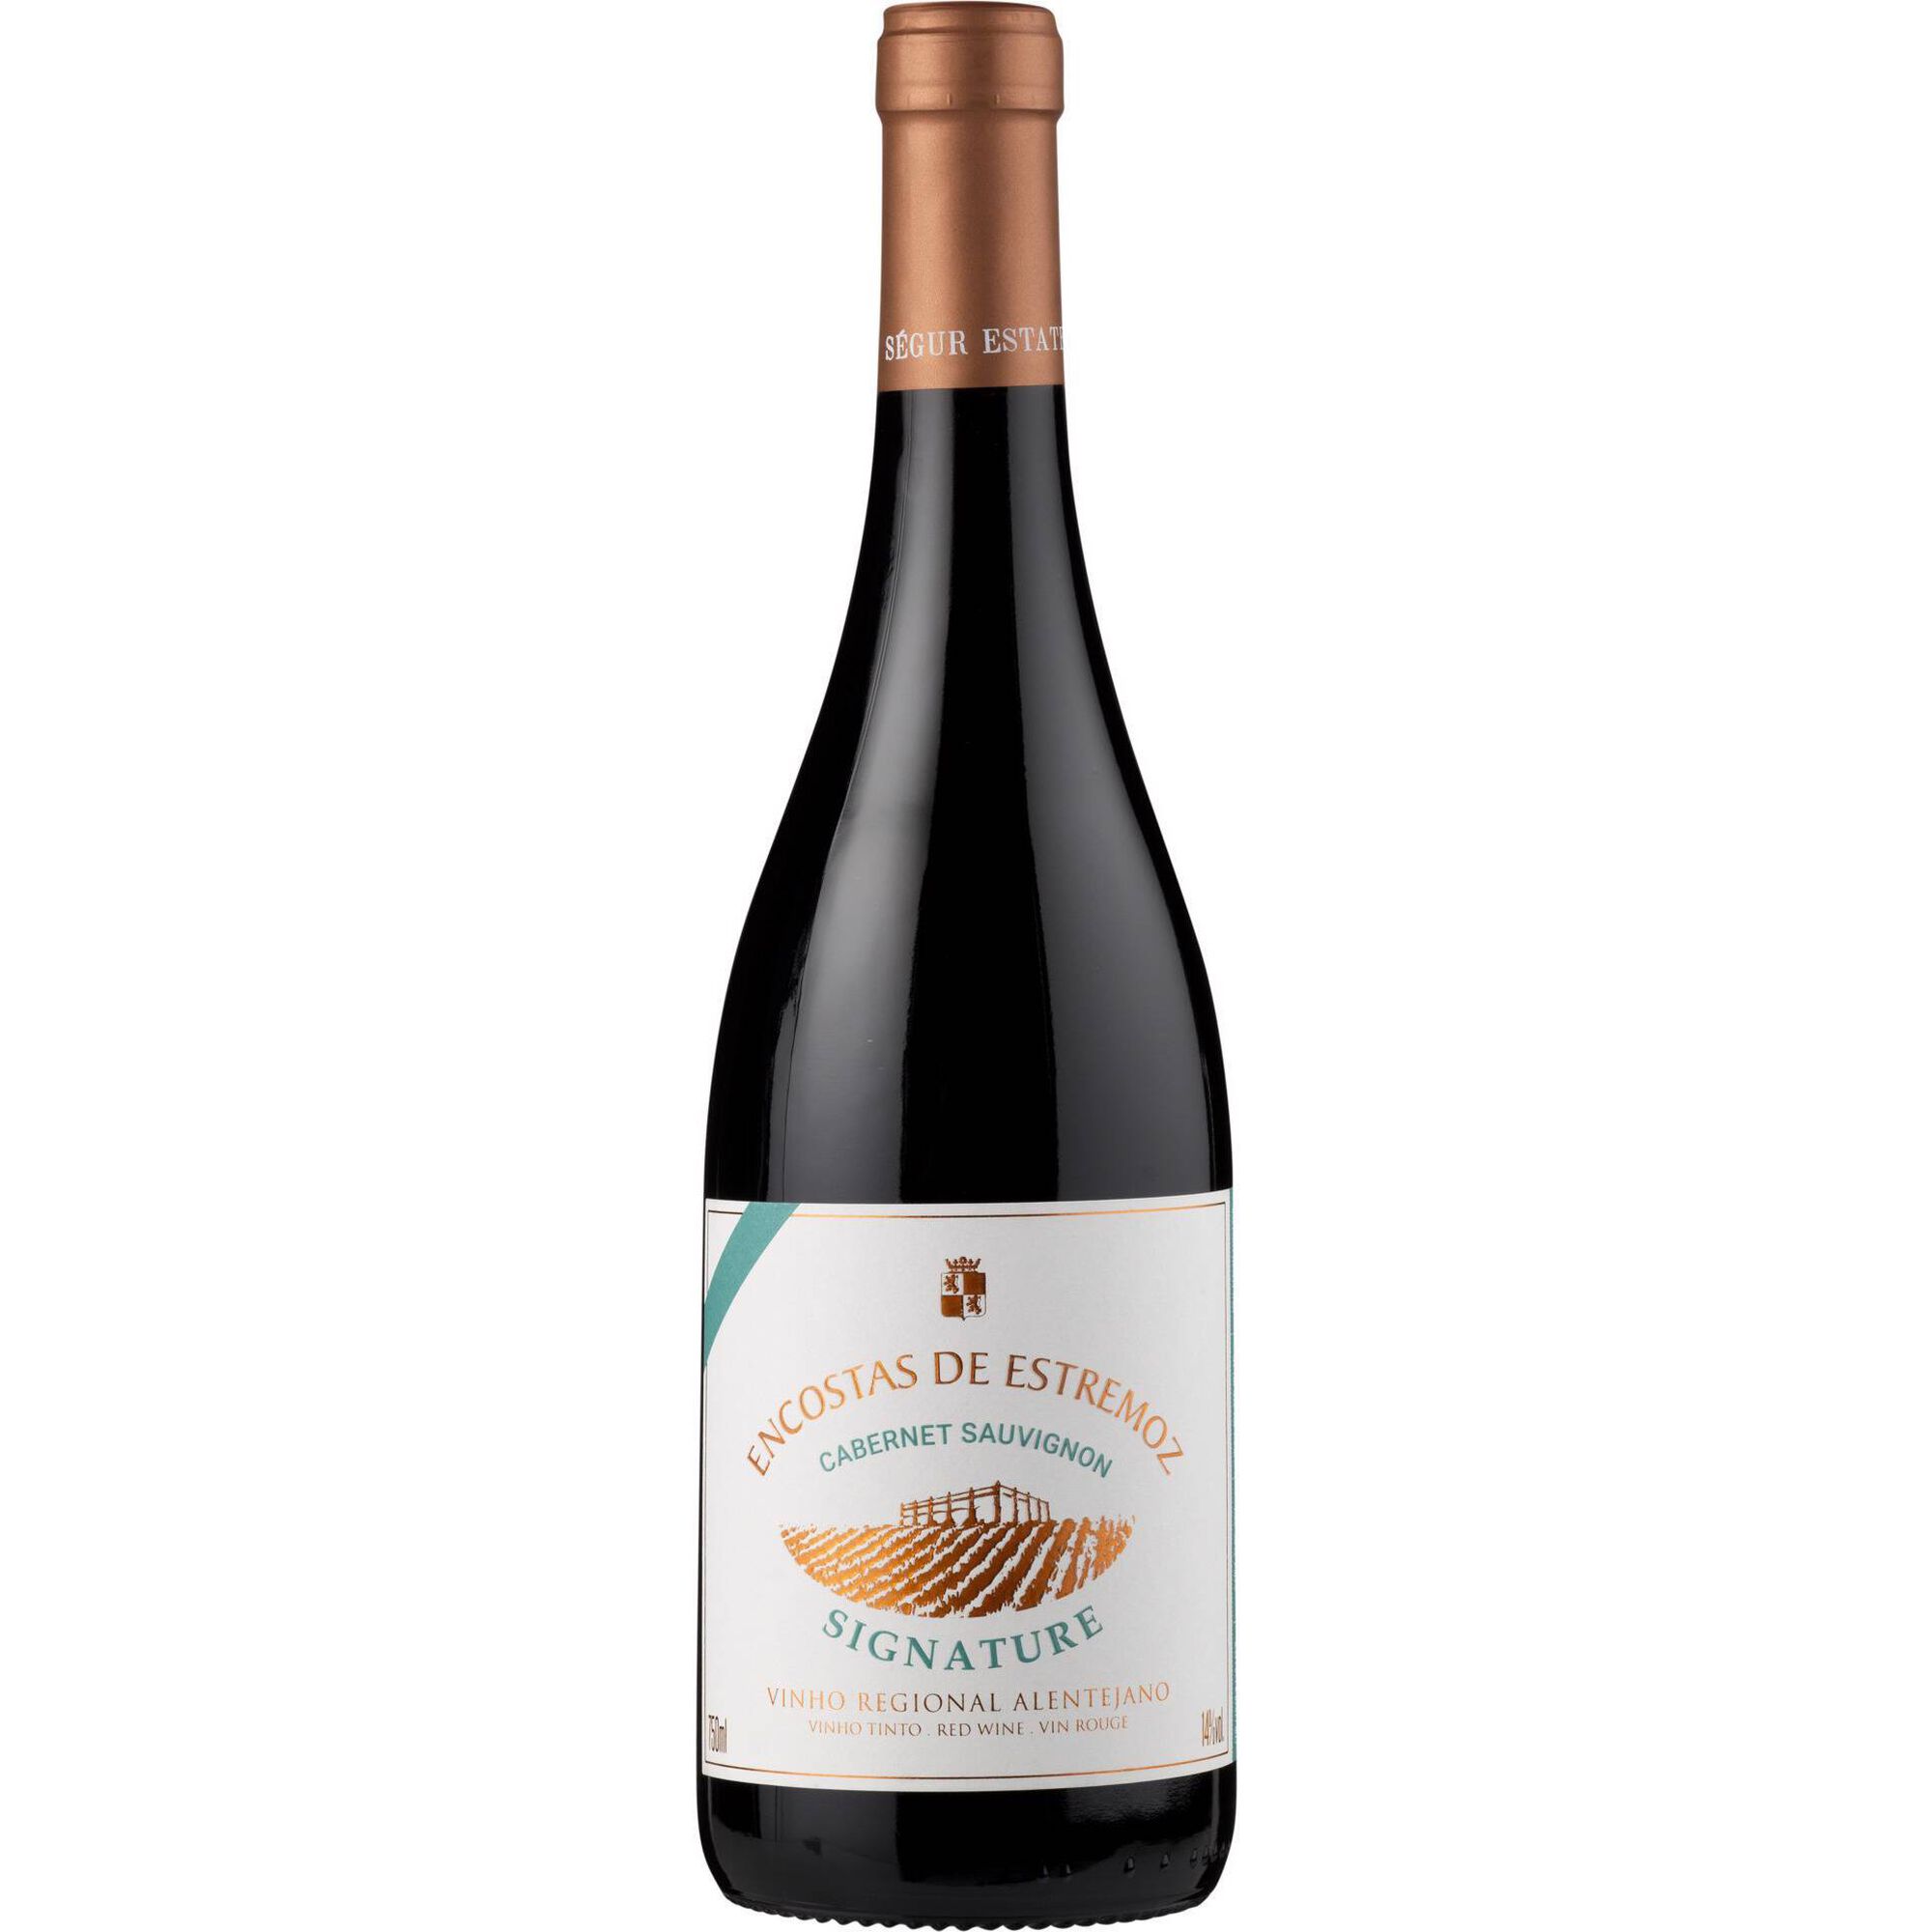 Encostas de Estremoz Cabernet Sauvignon Signature Regional Alentejano Vinho Tinto